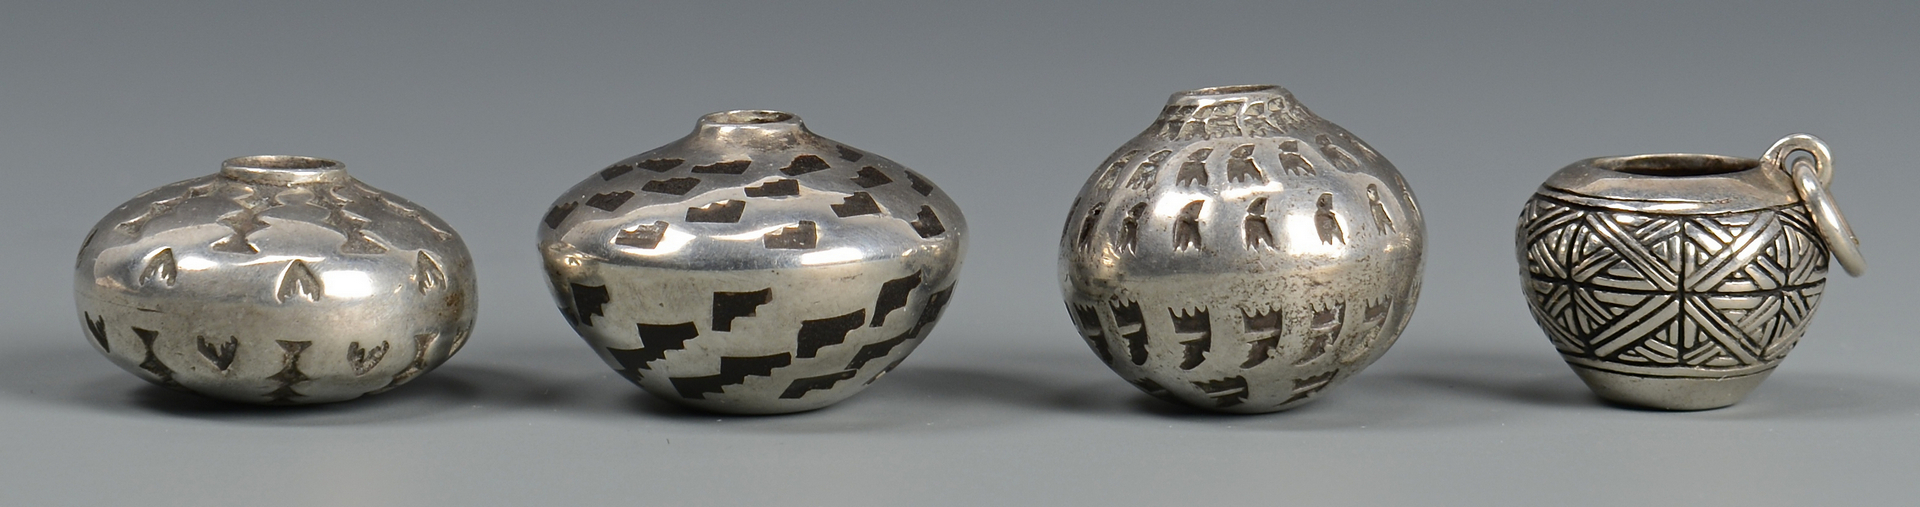 Lot 450: 4 Miniature Navajo Silver Jars